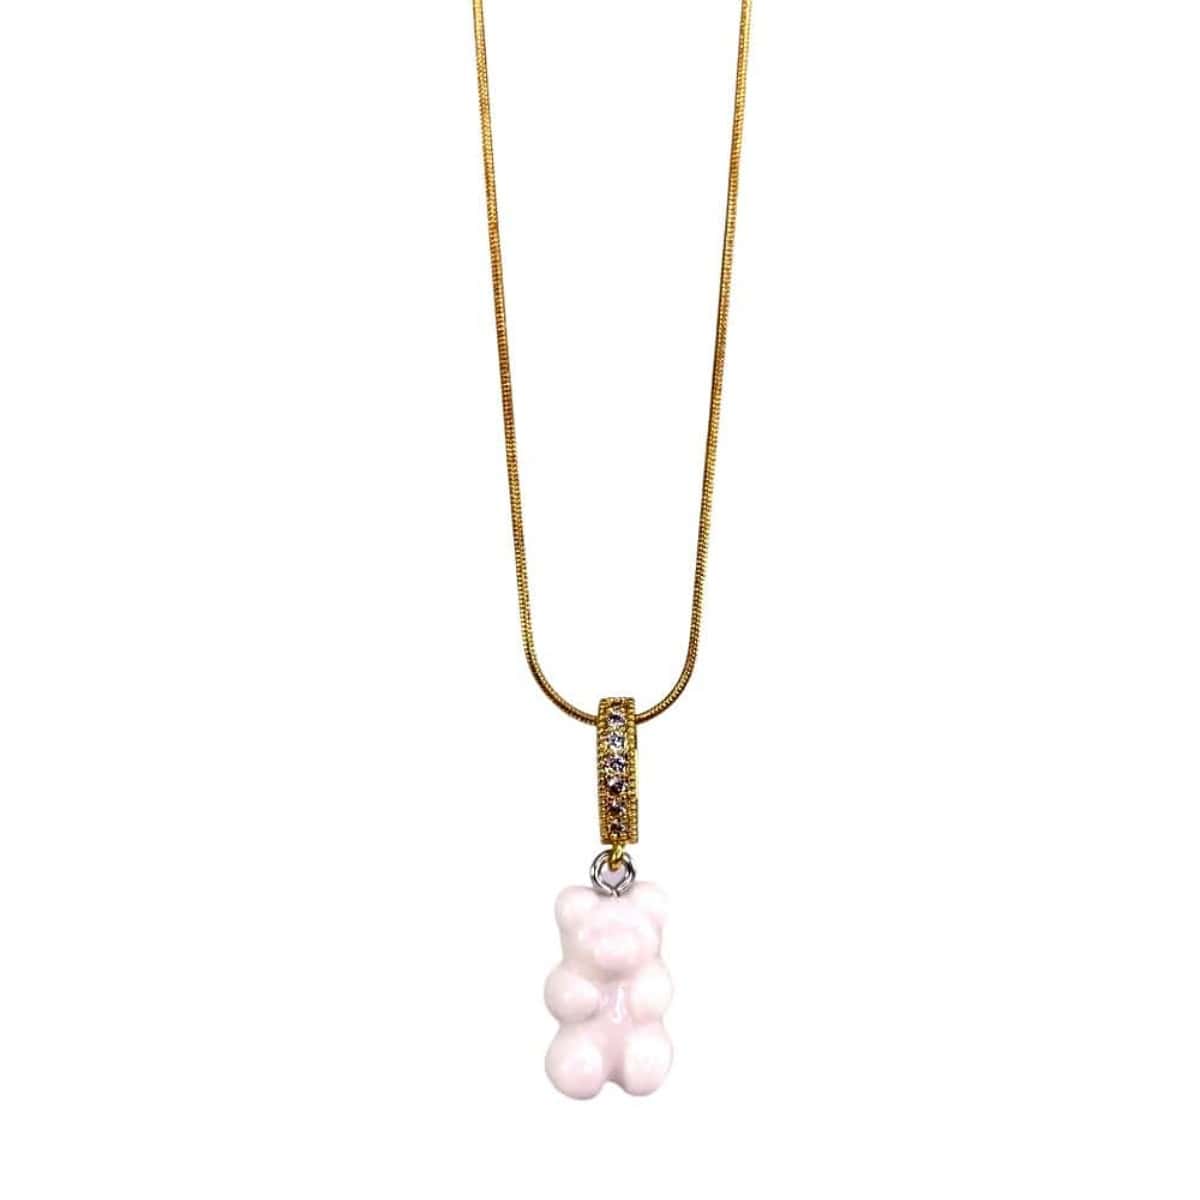 original gummy bear necklace, white, gold snake chain - Gummy Bear Bling